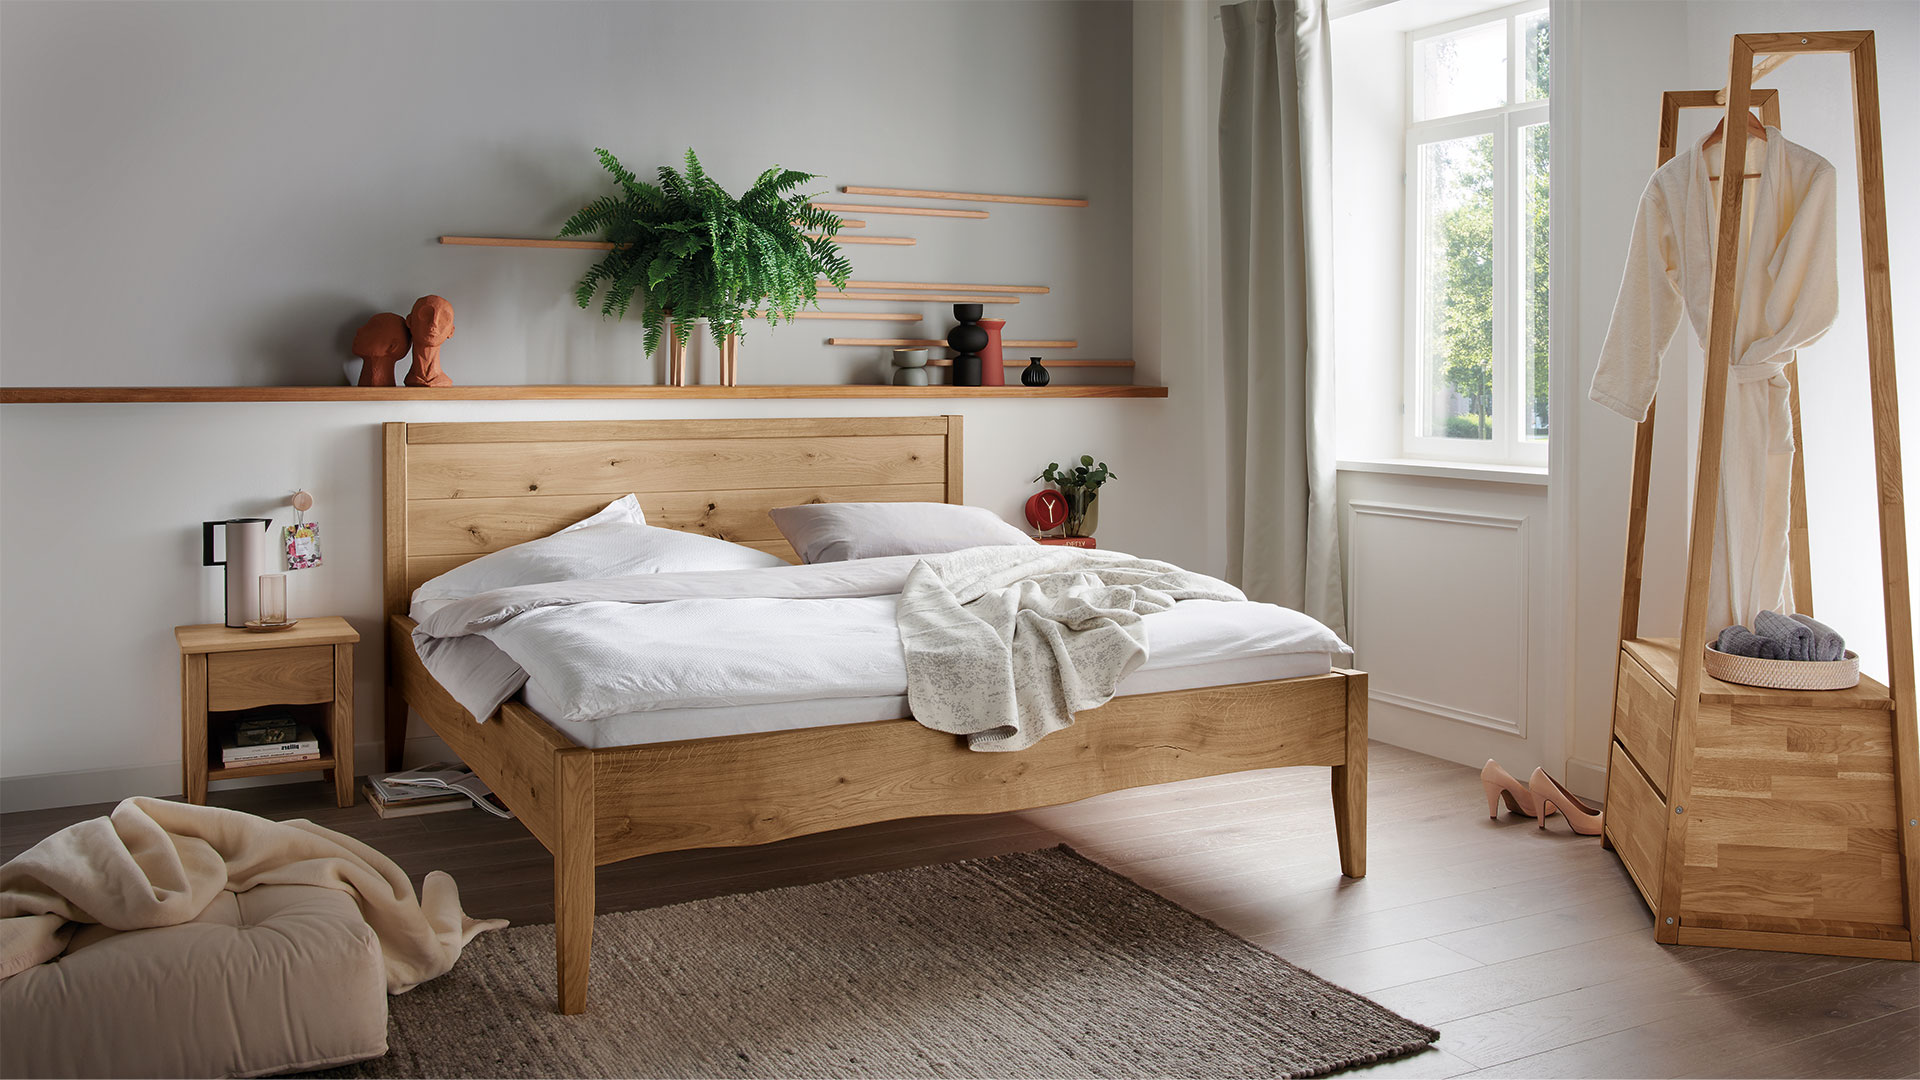 Grootste Toeschouwer In beweging Massief houten bed "Grivola" | allnatura Nederland